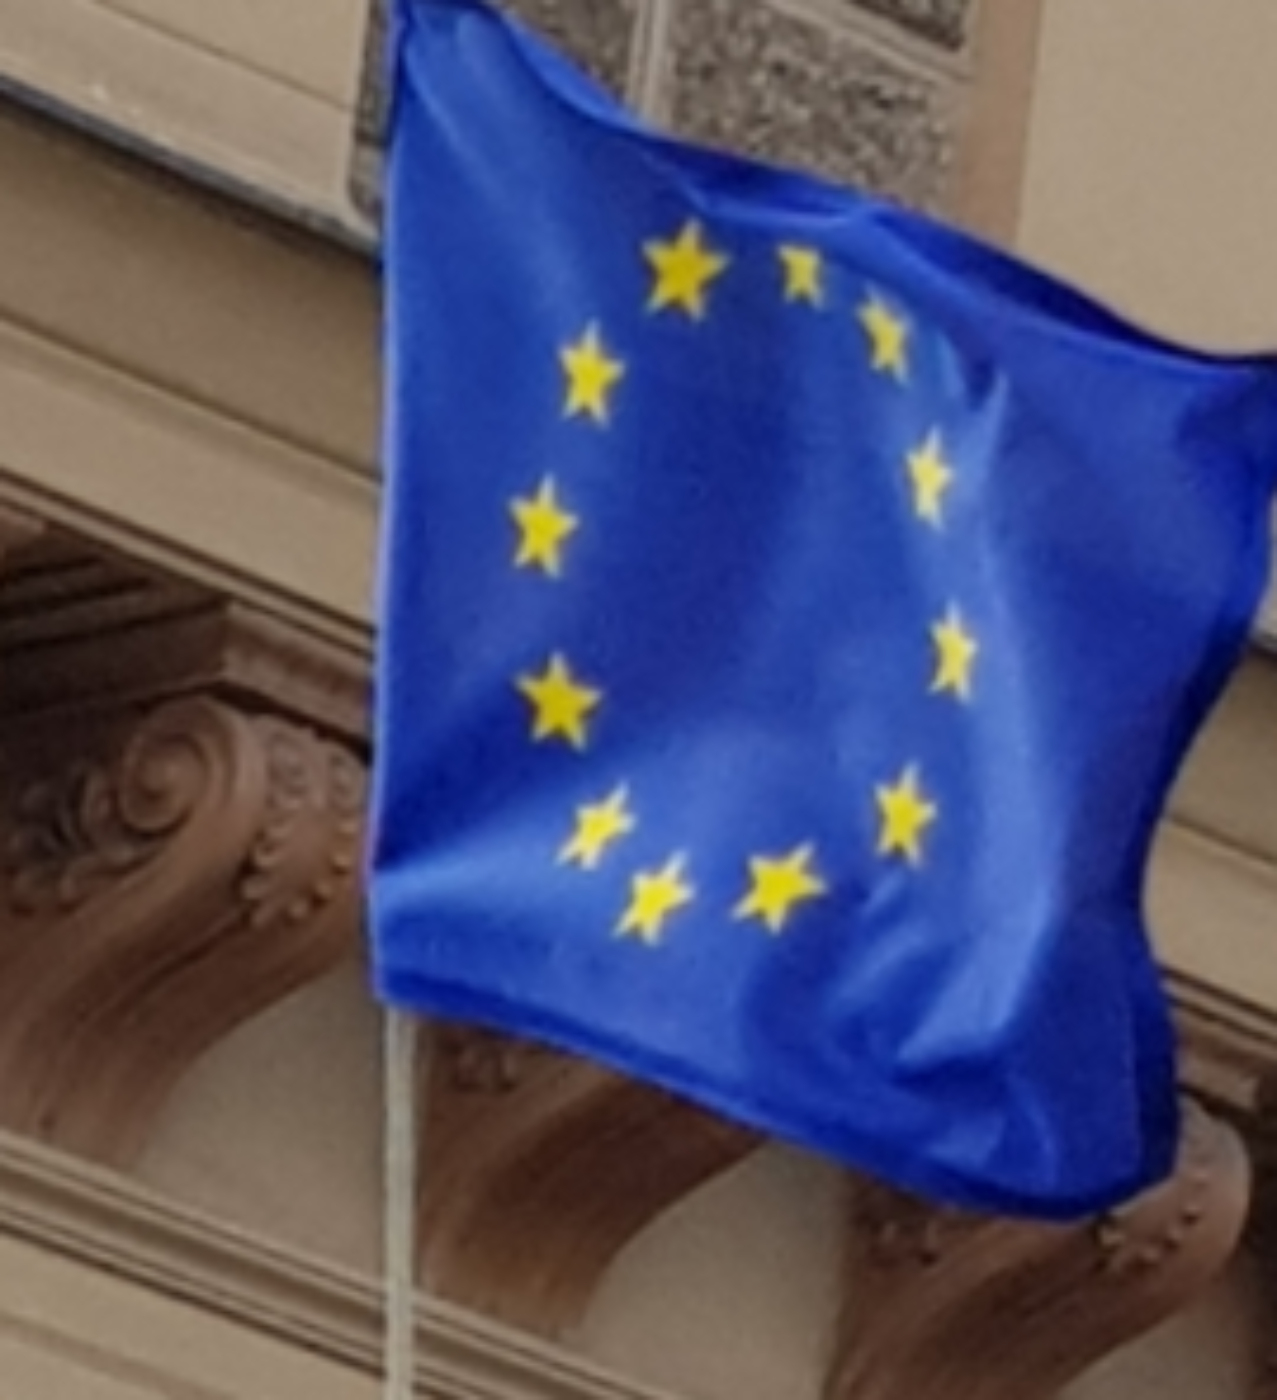 Flagge der Europäischen Union, Blau mit gelben Sternen; im Hintergrund ist ein Teil einer Gebäudefassade zu sehen